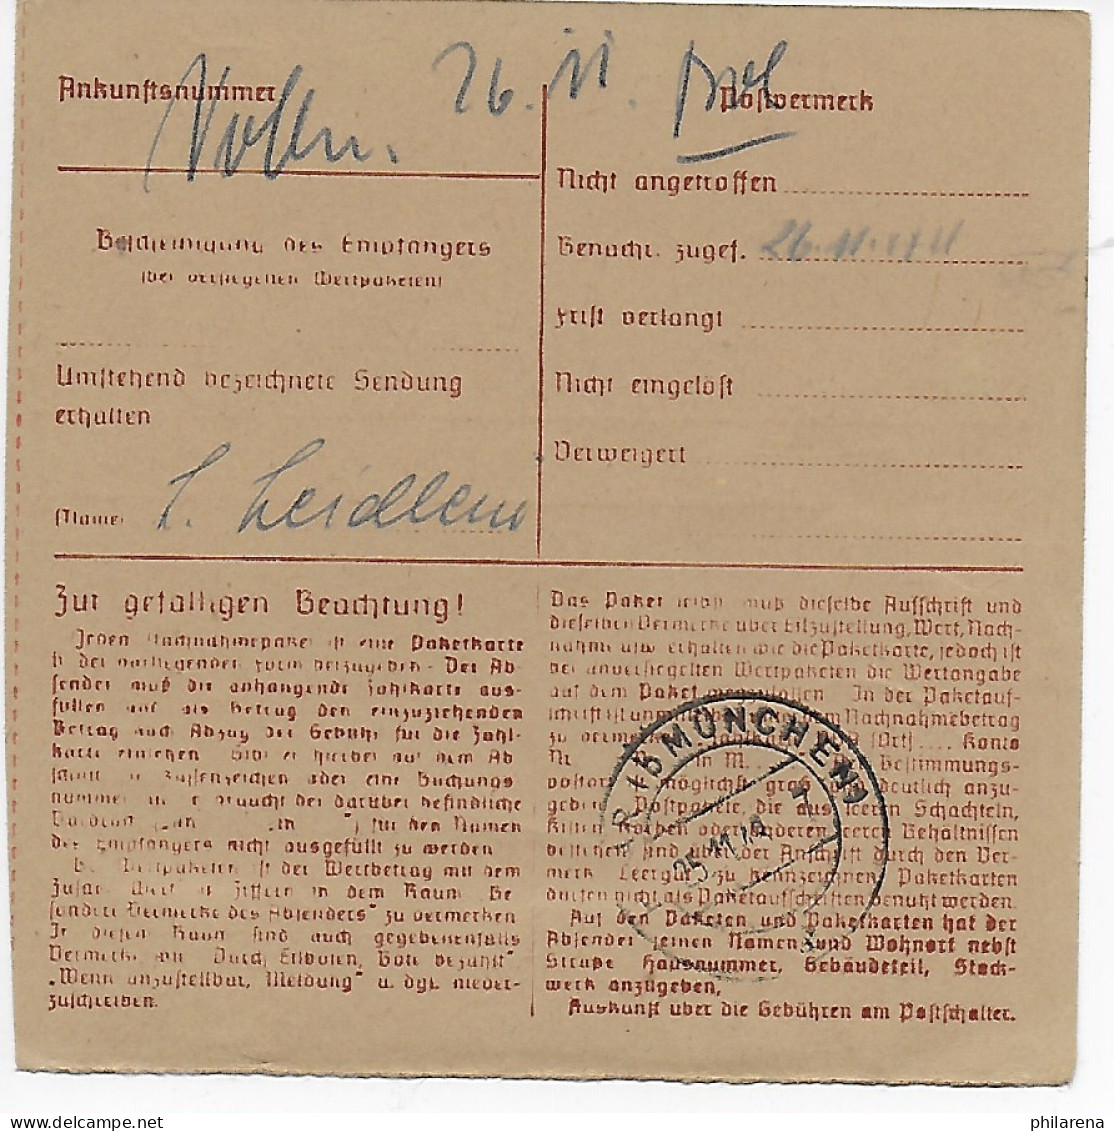 Paketkarte Hagen/Westf. Nach Haar, München 1948, MeF - Storia Postale